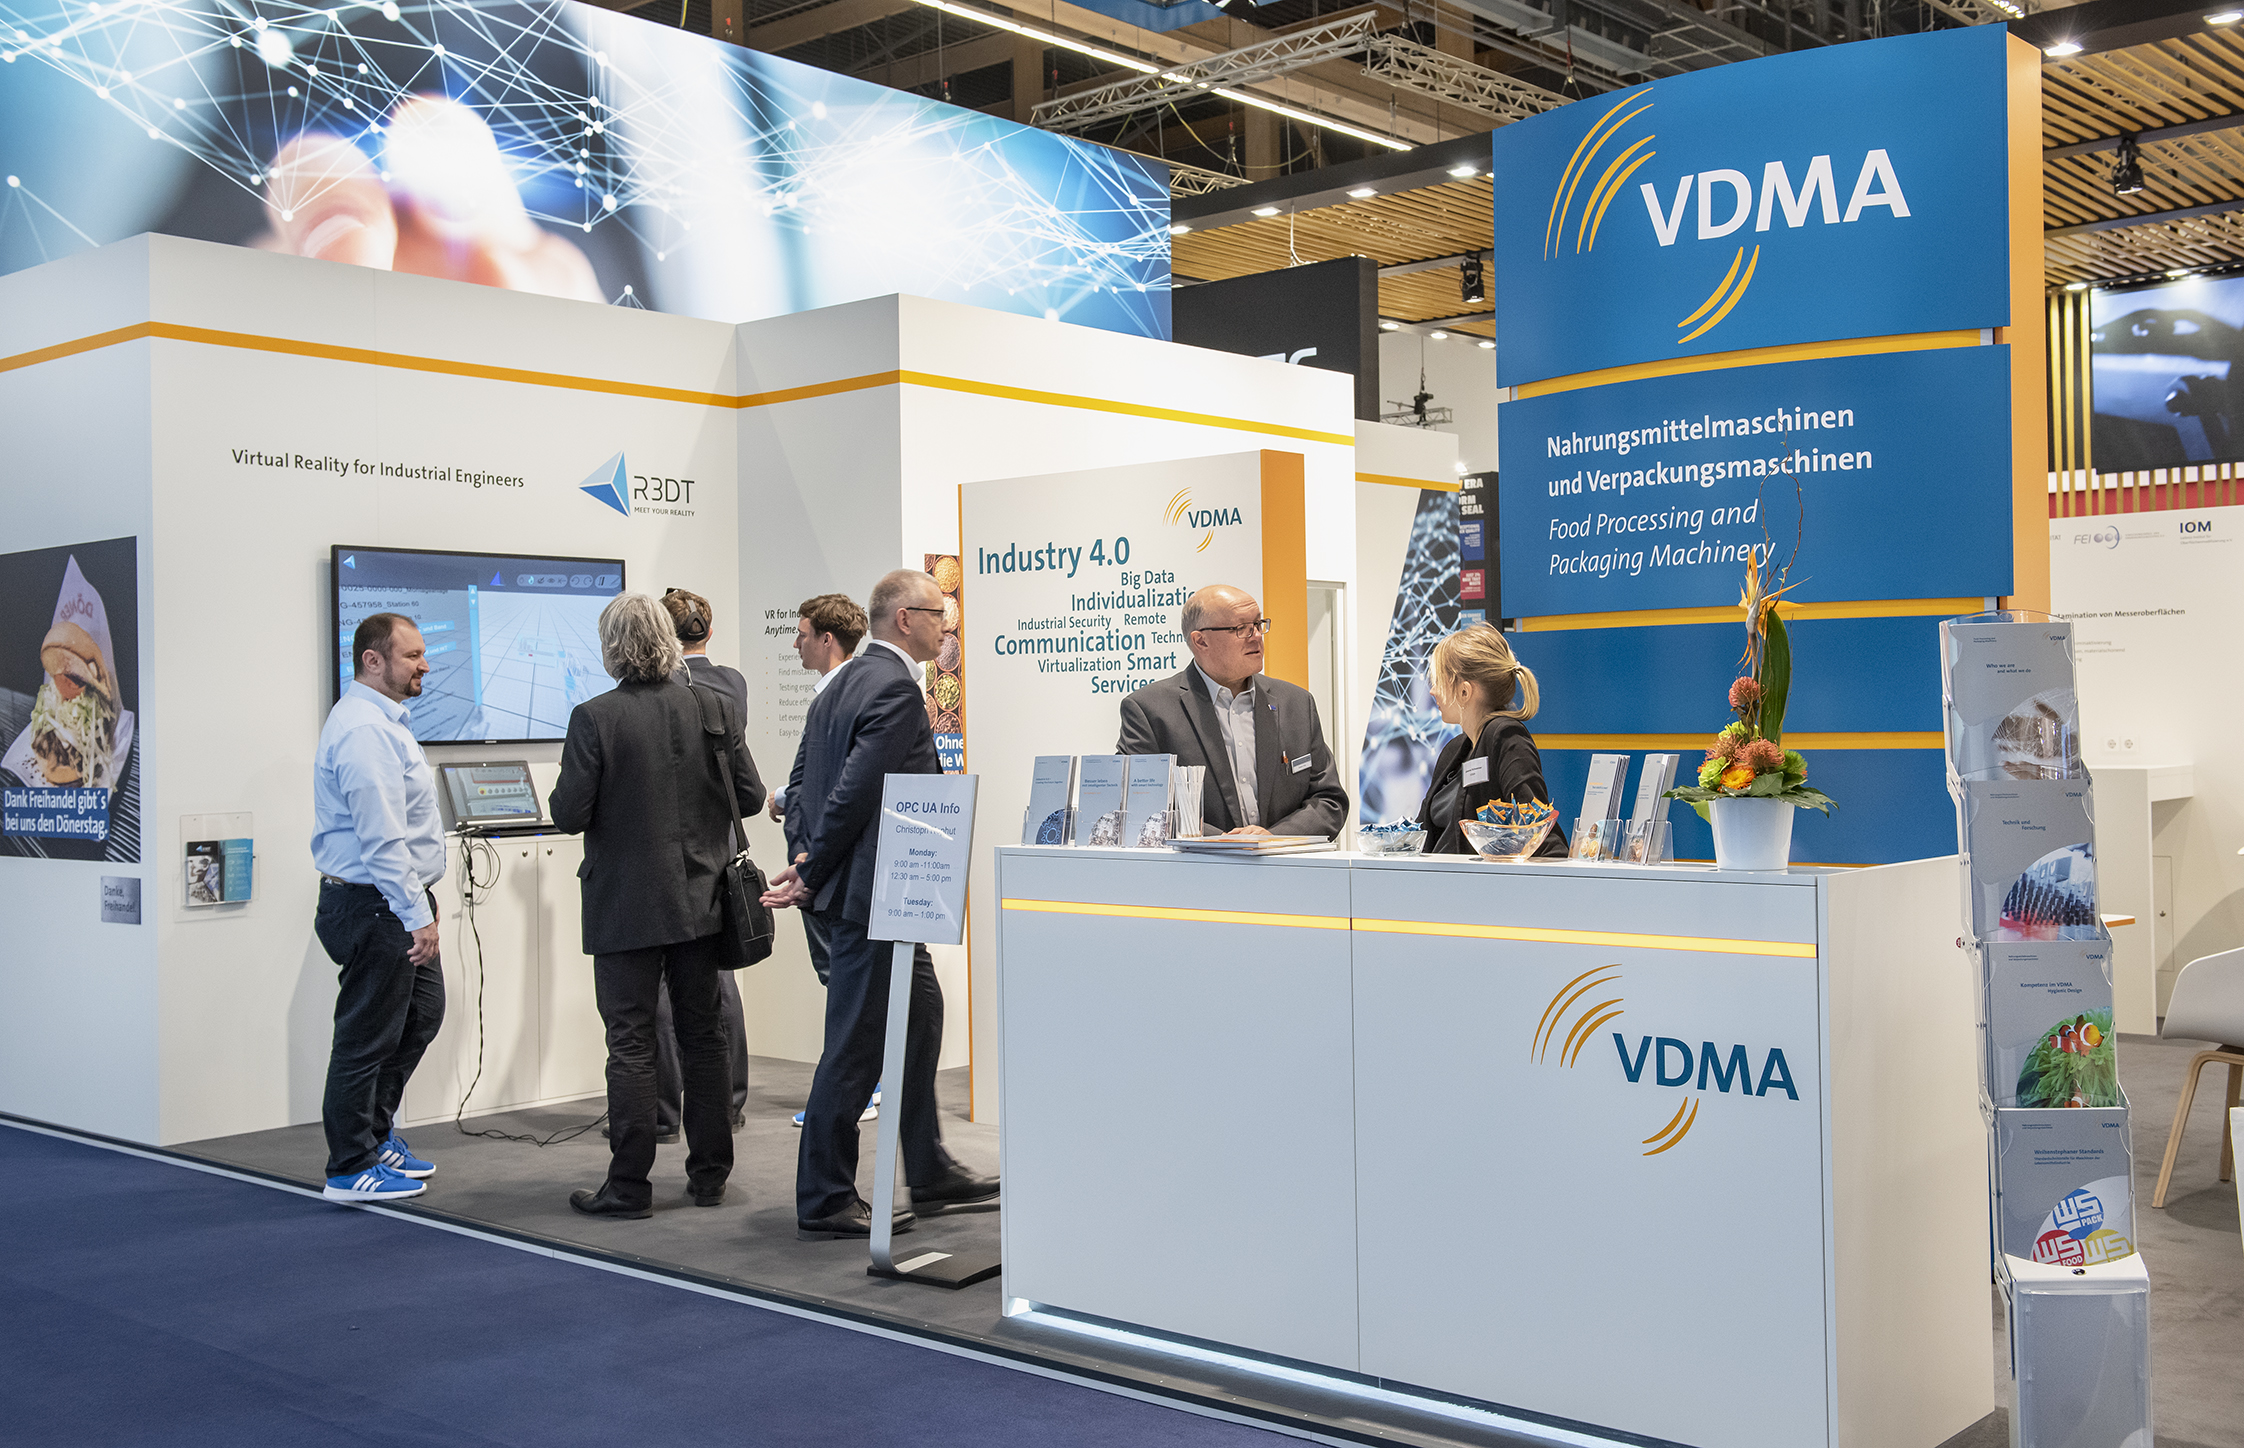 VDMA Technologie Lounge 02: Virtual Reality für Wirtschaftsingenieure